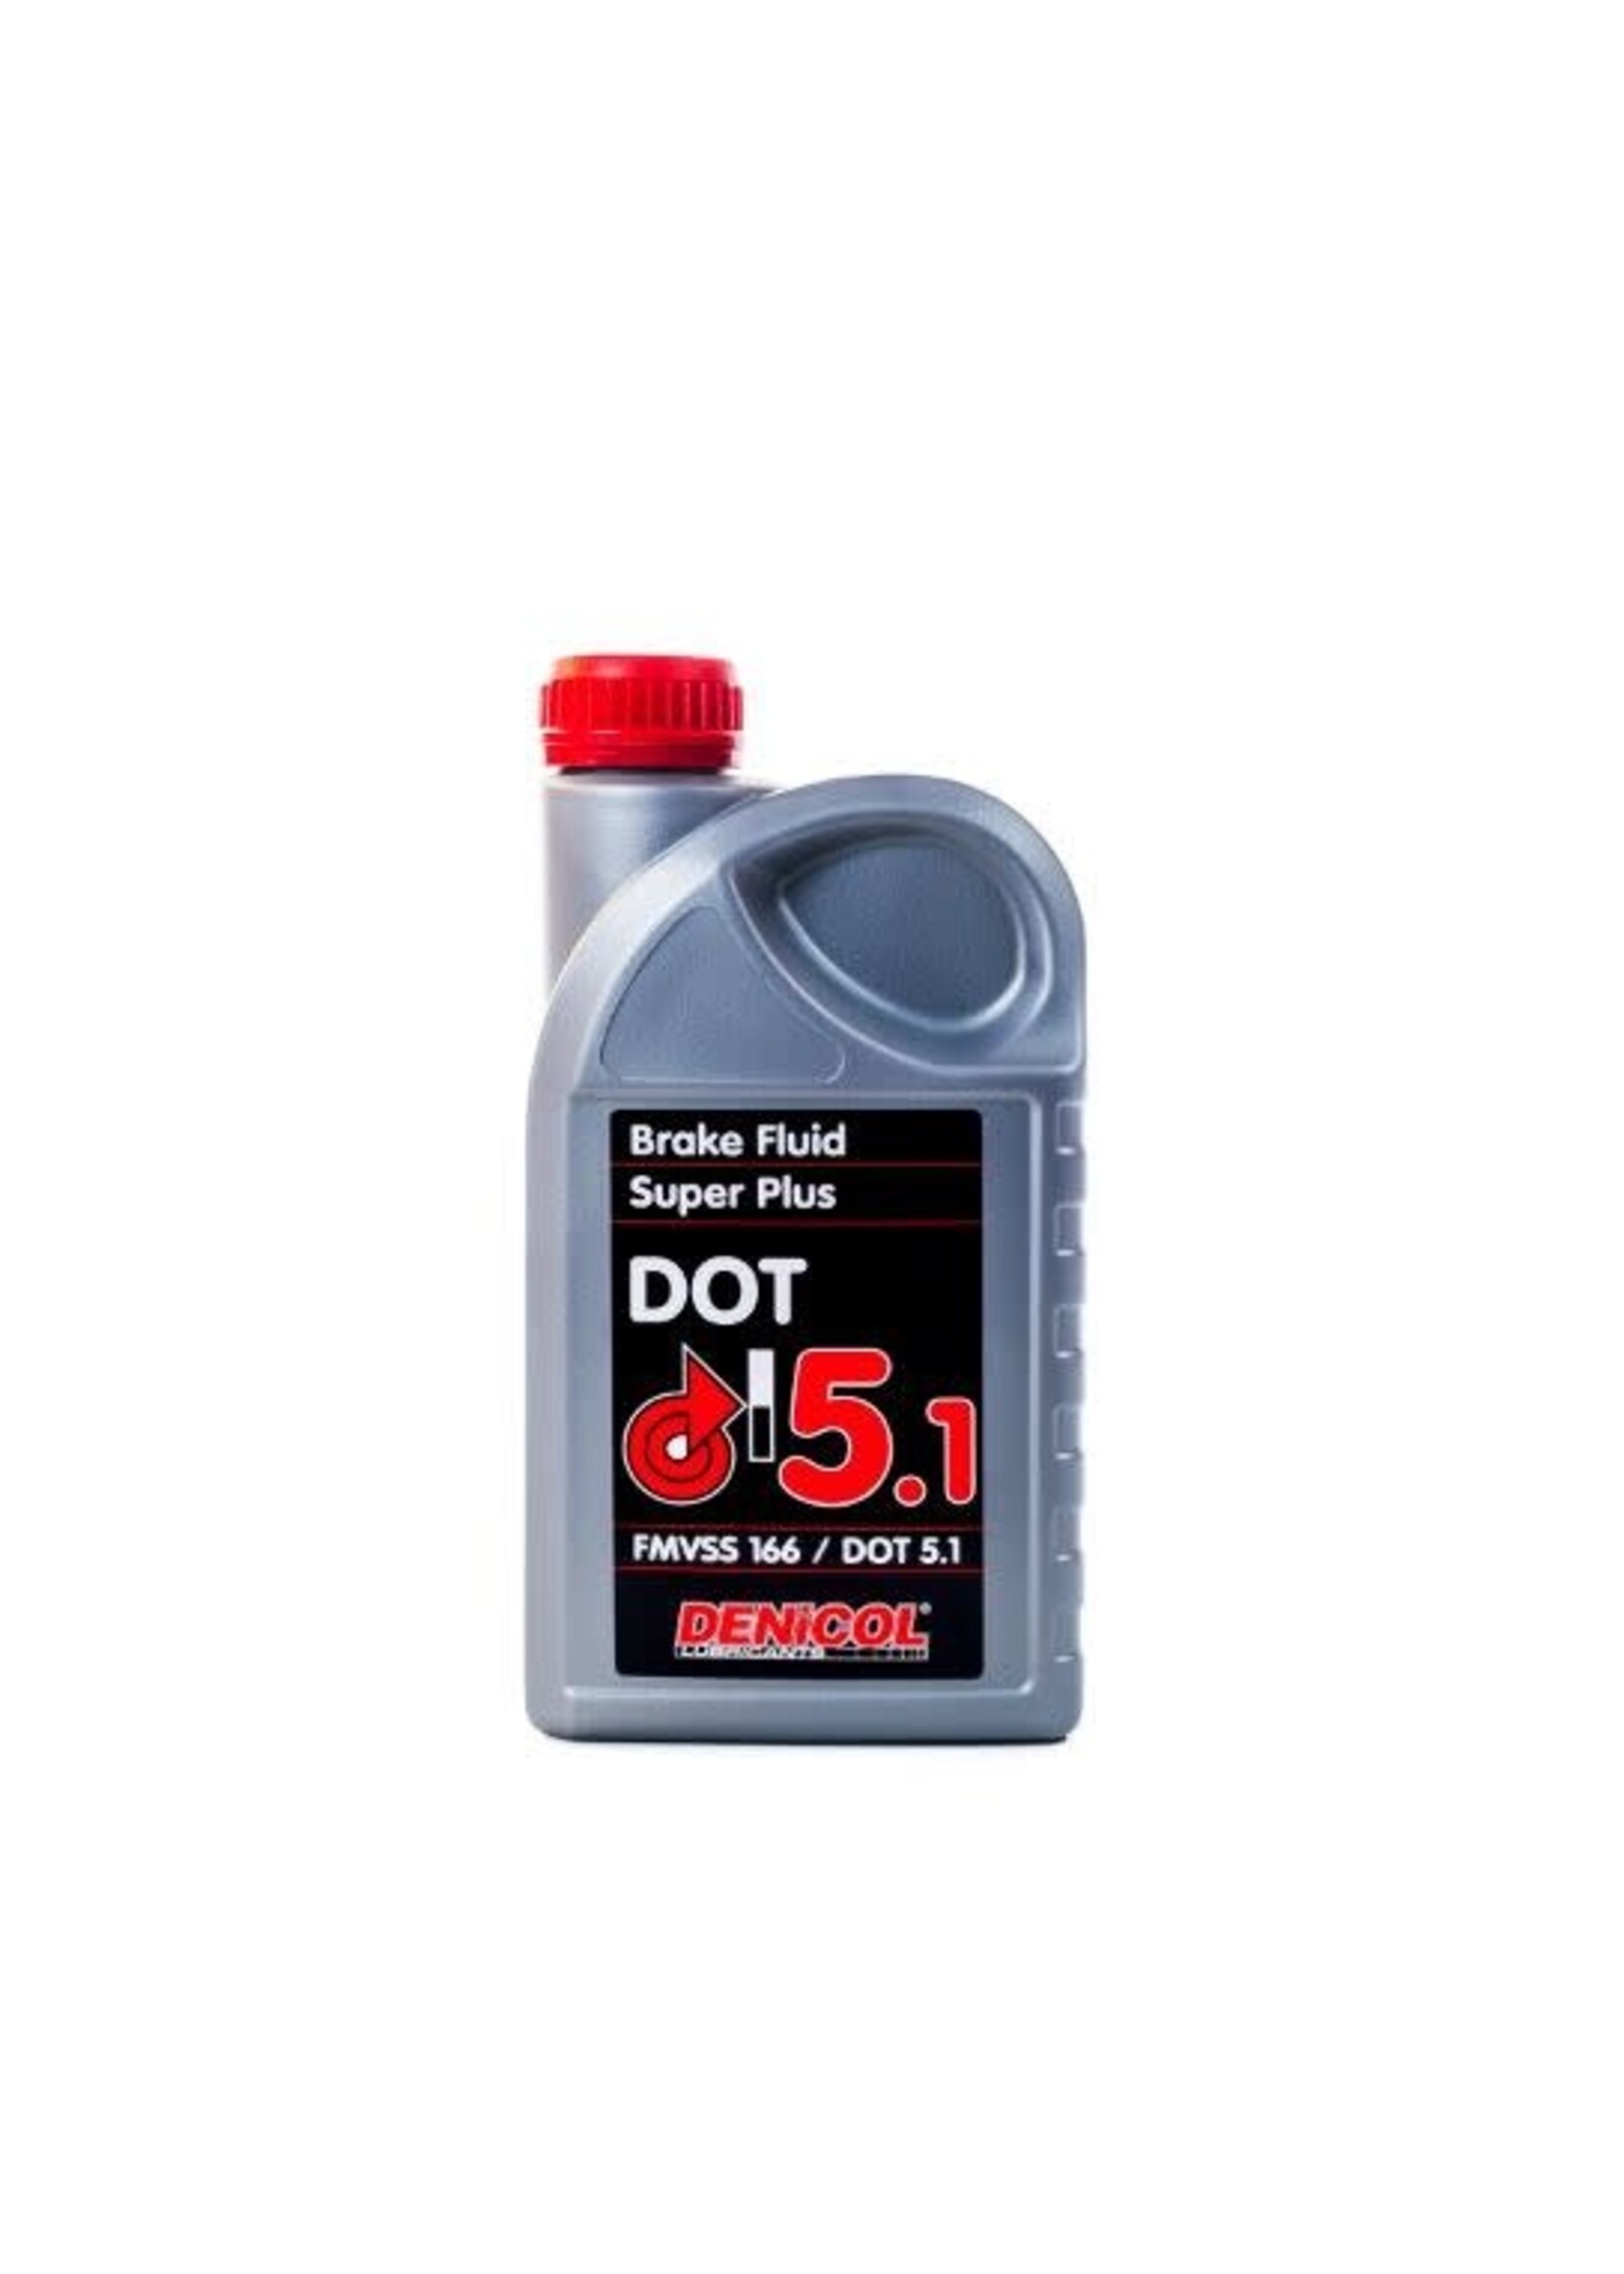 Denicol DOT 5.1 Brake Fluid 1 LITER